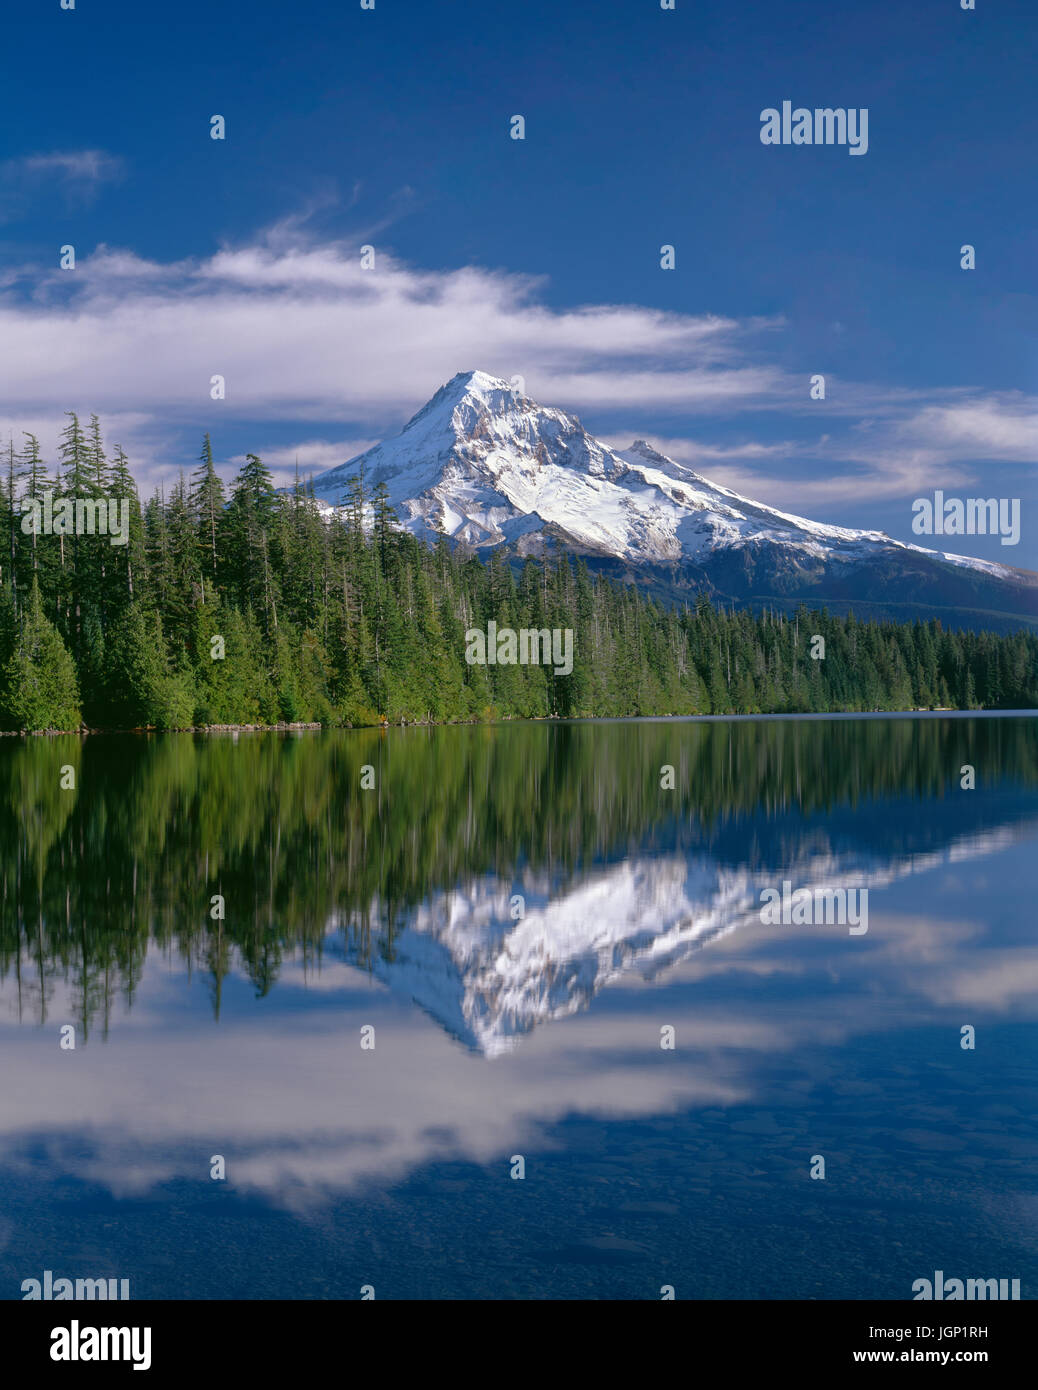 USA ; Oregon ; Mount Hood National Forest ; côté nord-ouest du Mont Hood et conifères réfléchir sur la surface calme du lac perdu. Banque D'Images